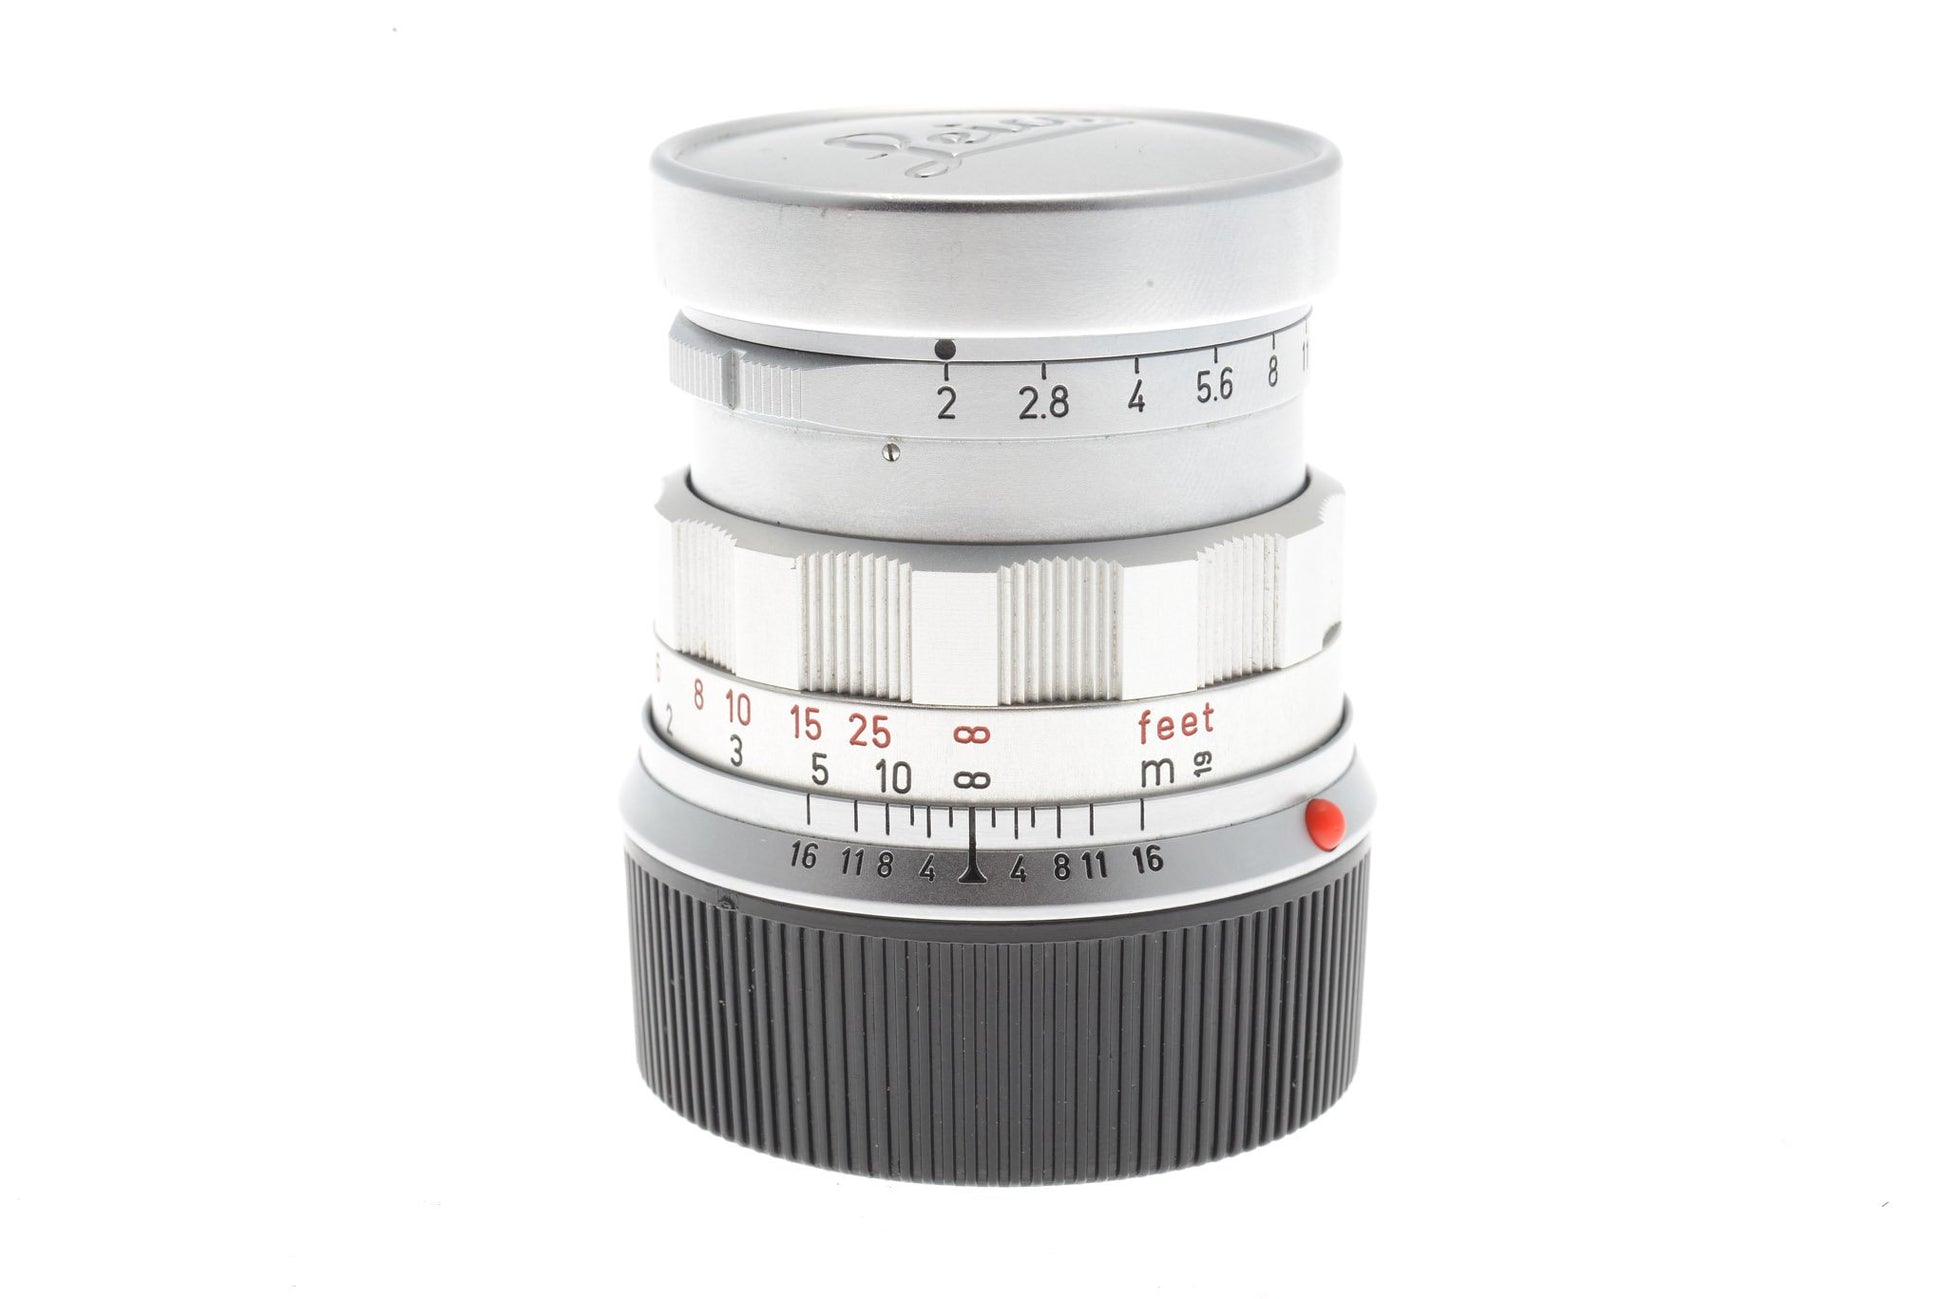 Leica 50mm f2 Summicron Rigid - Lens